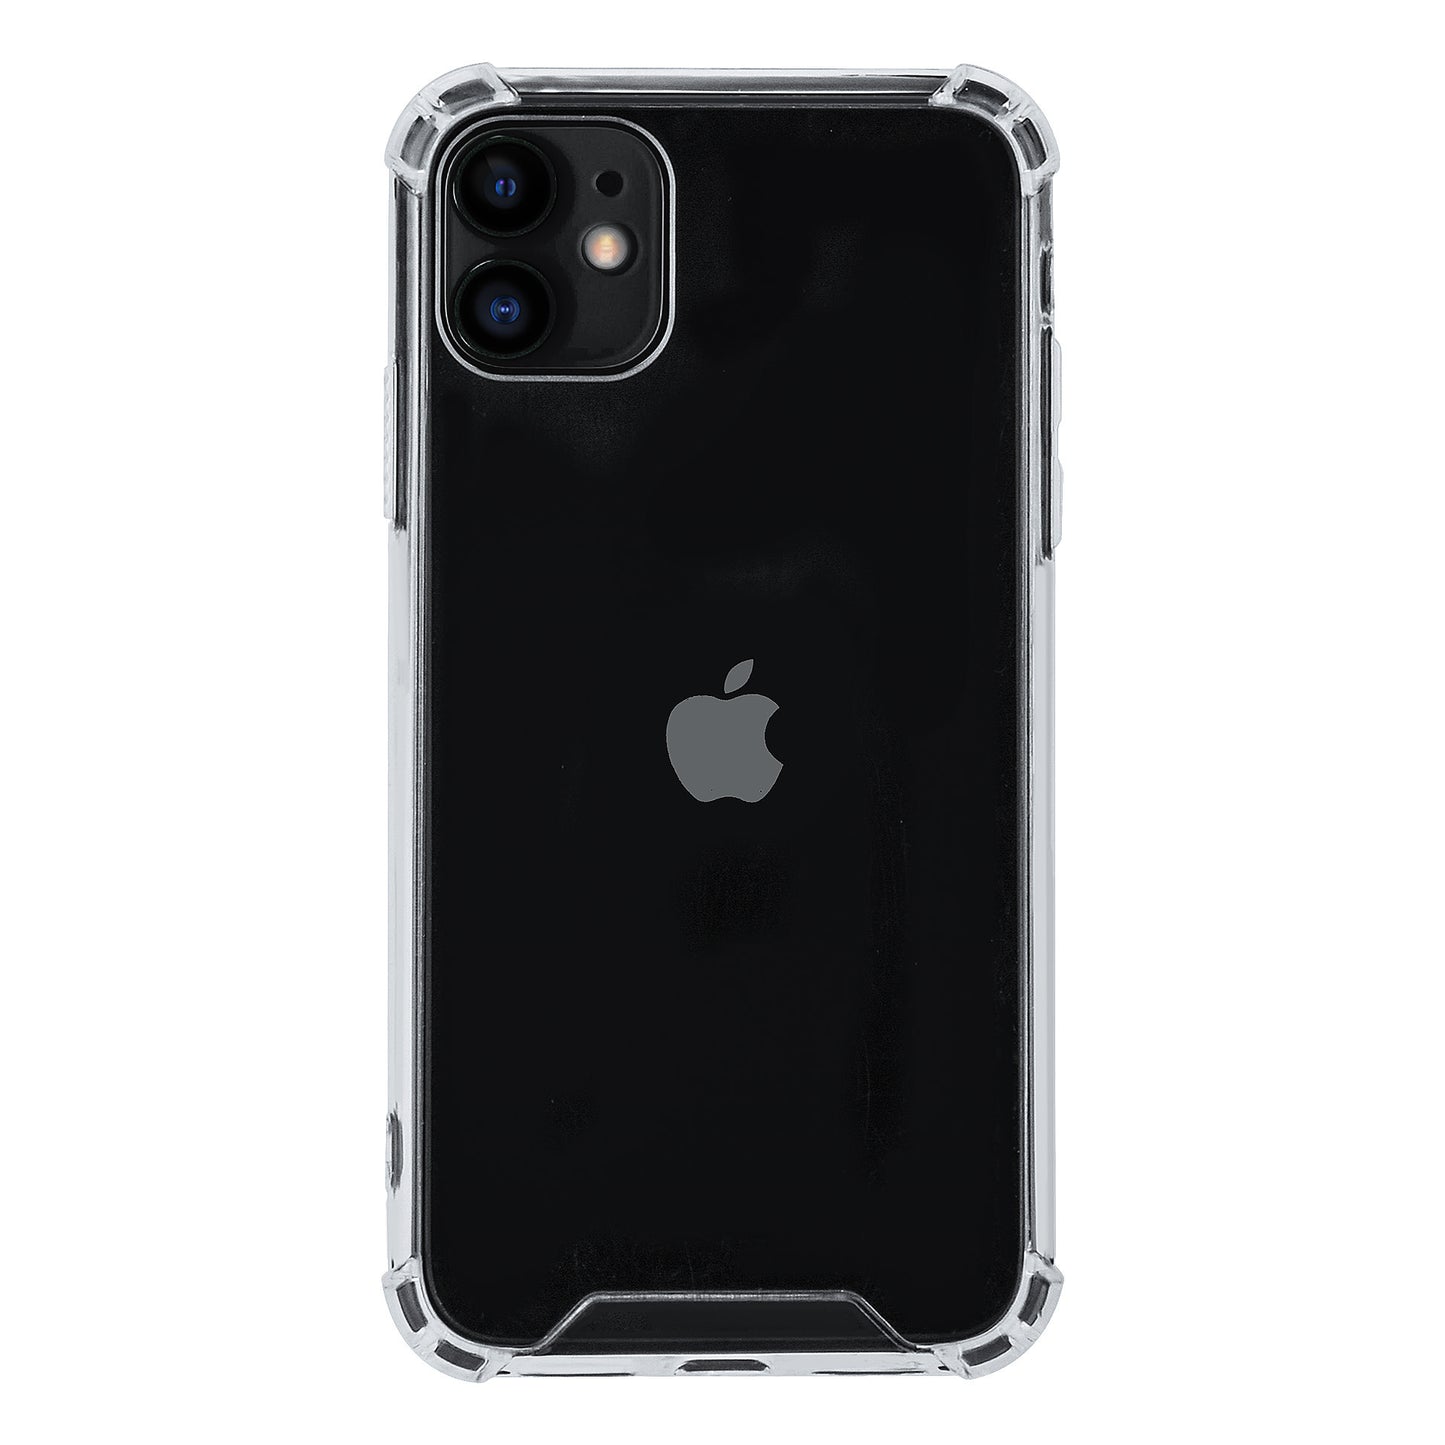 iPhone 11 TPU Backcover - Transparant - Antishock